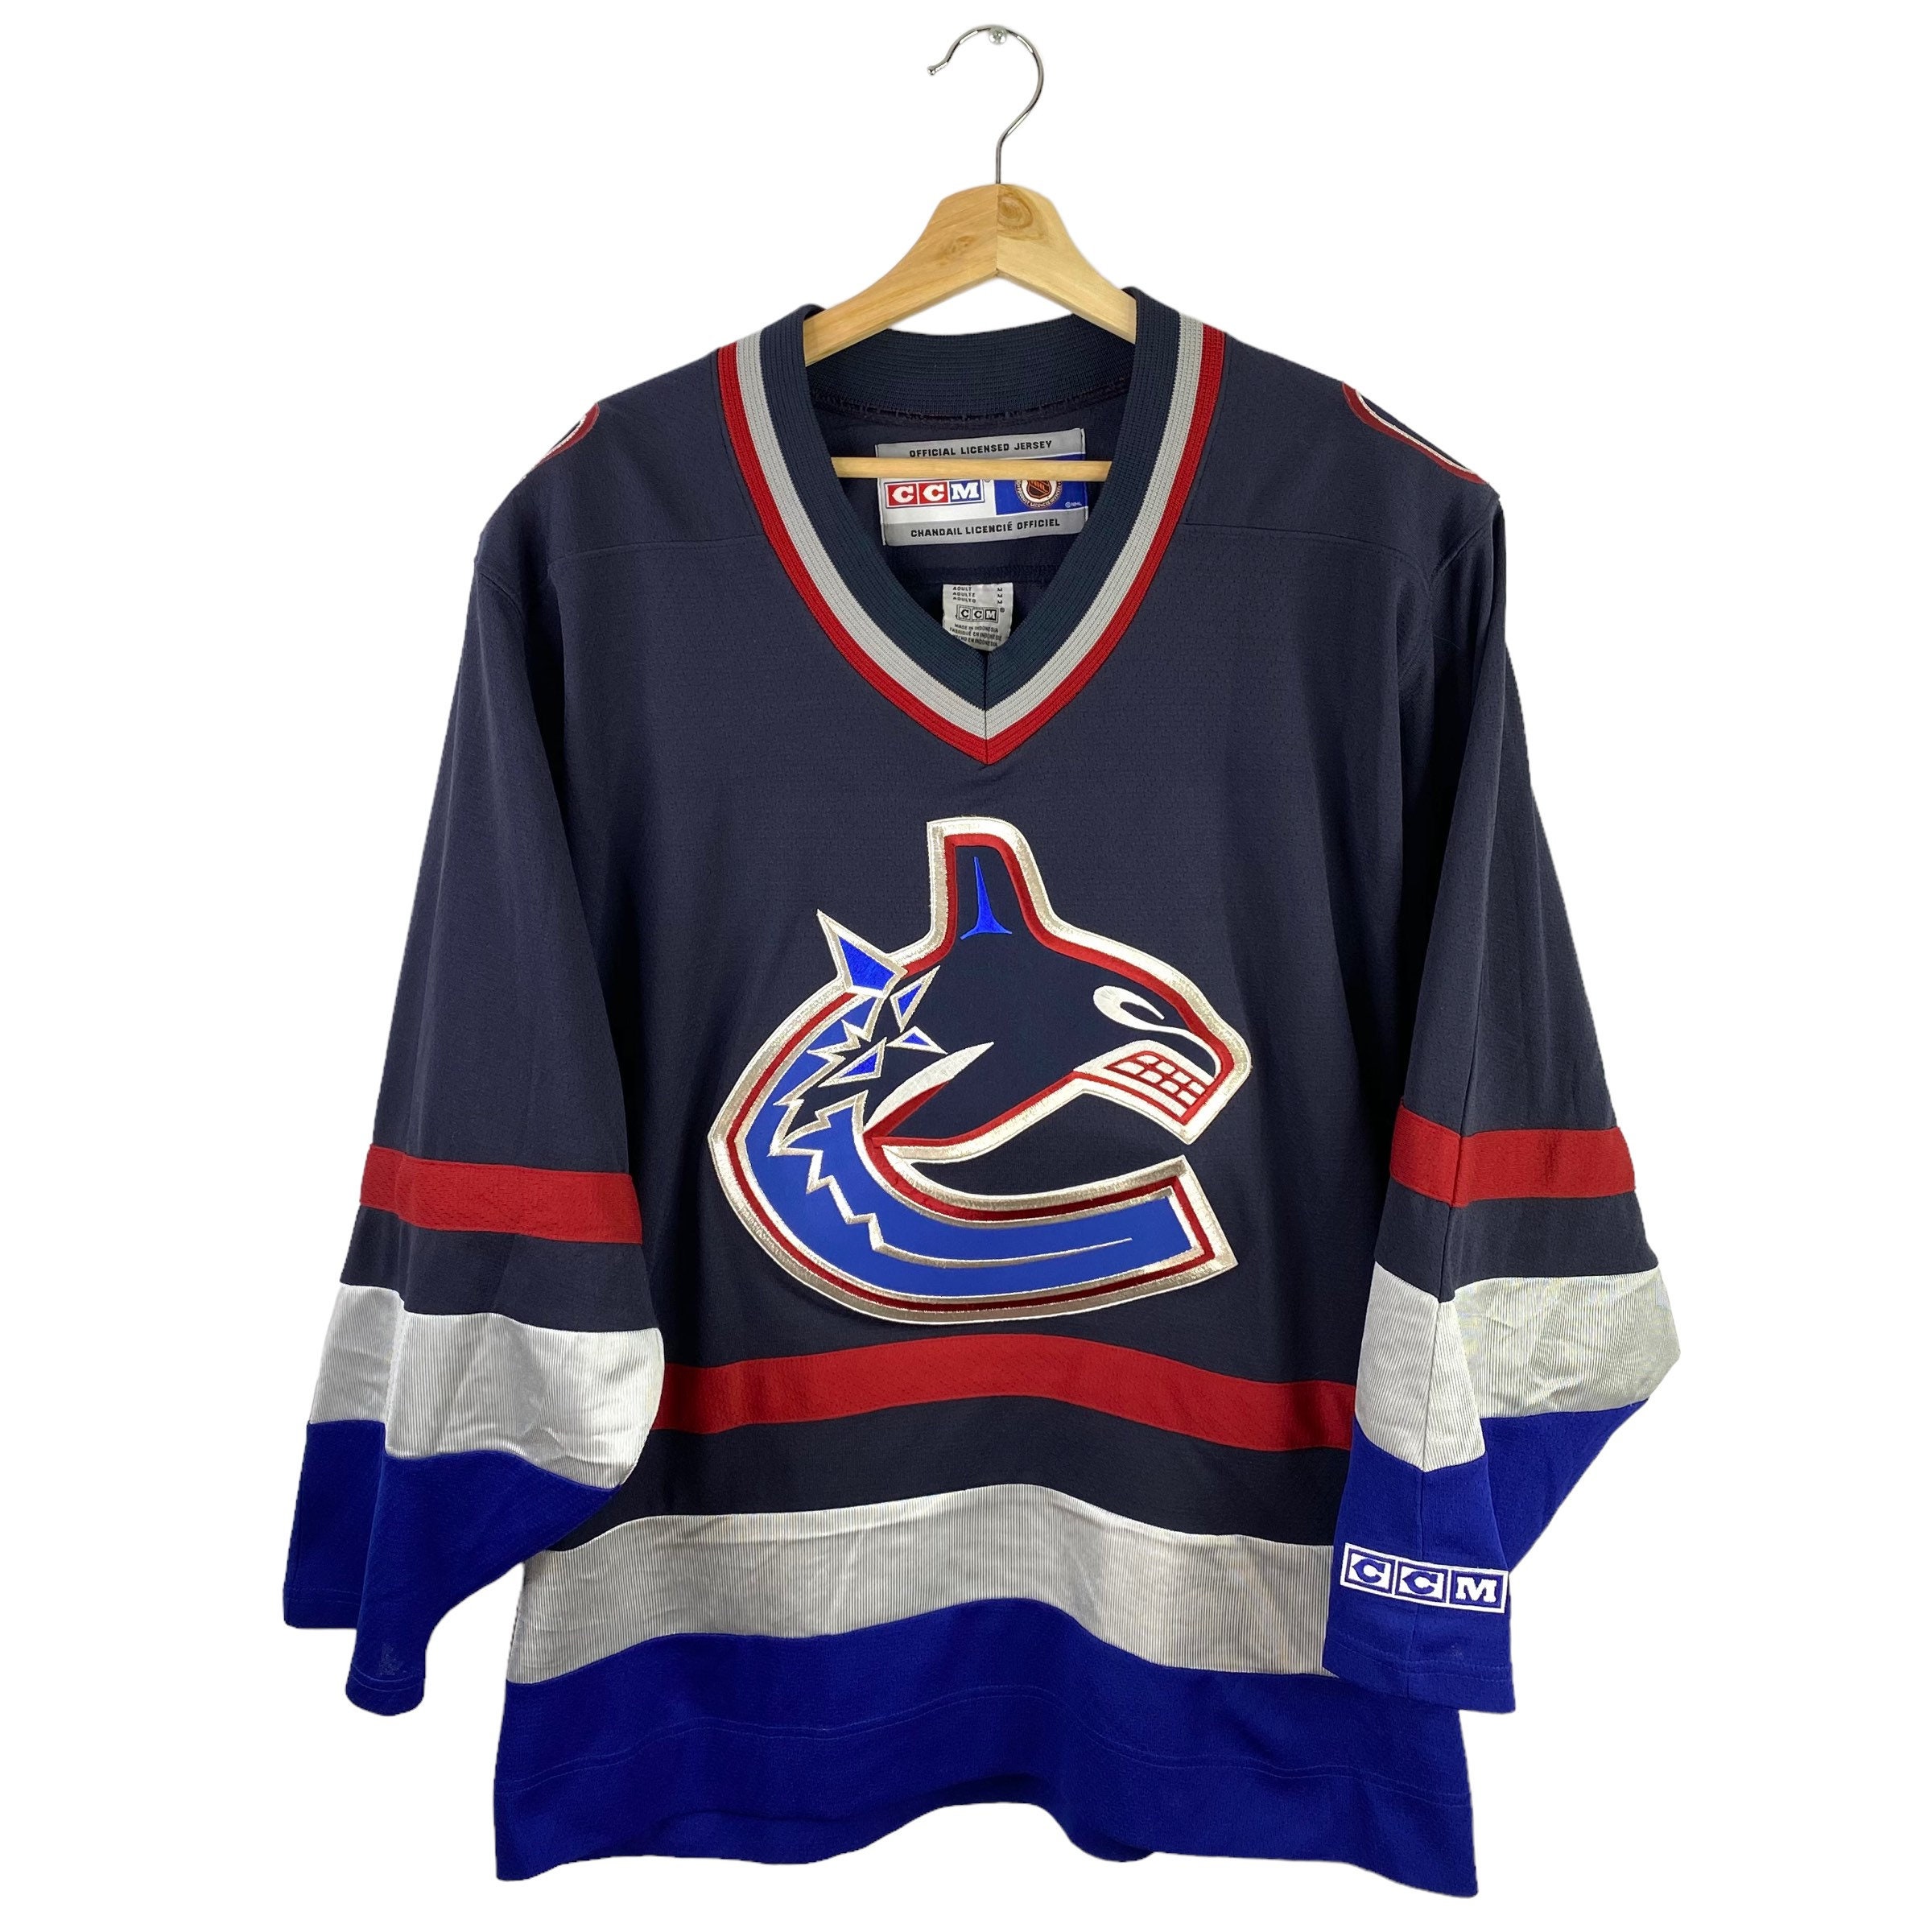 TREVOR LINDEN Vancouver Canucks 1994 CCM Vintage Throwback NHL Hockey Jersey  - Custom Throwback Jerseys